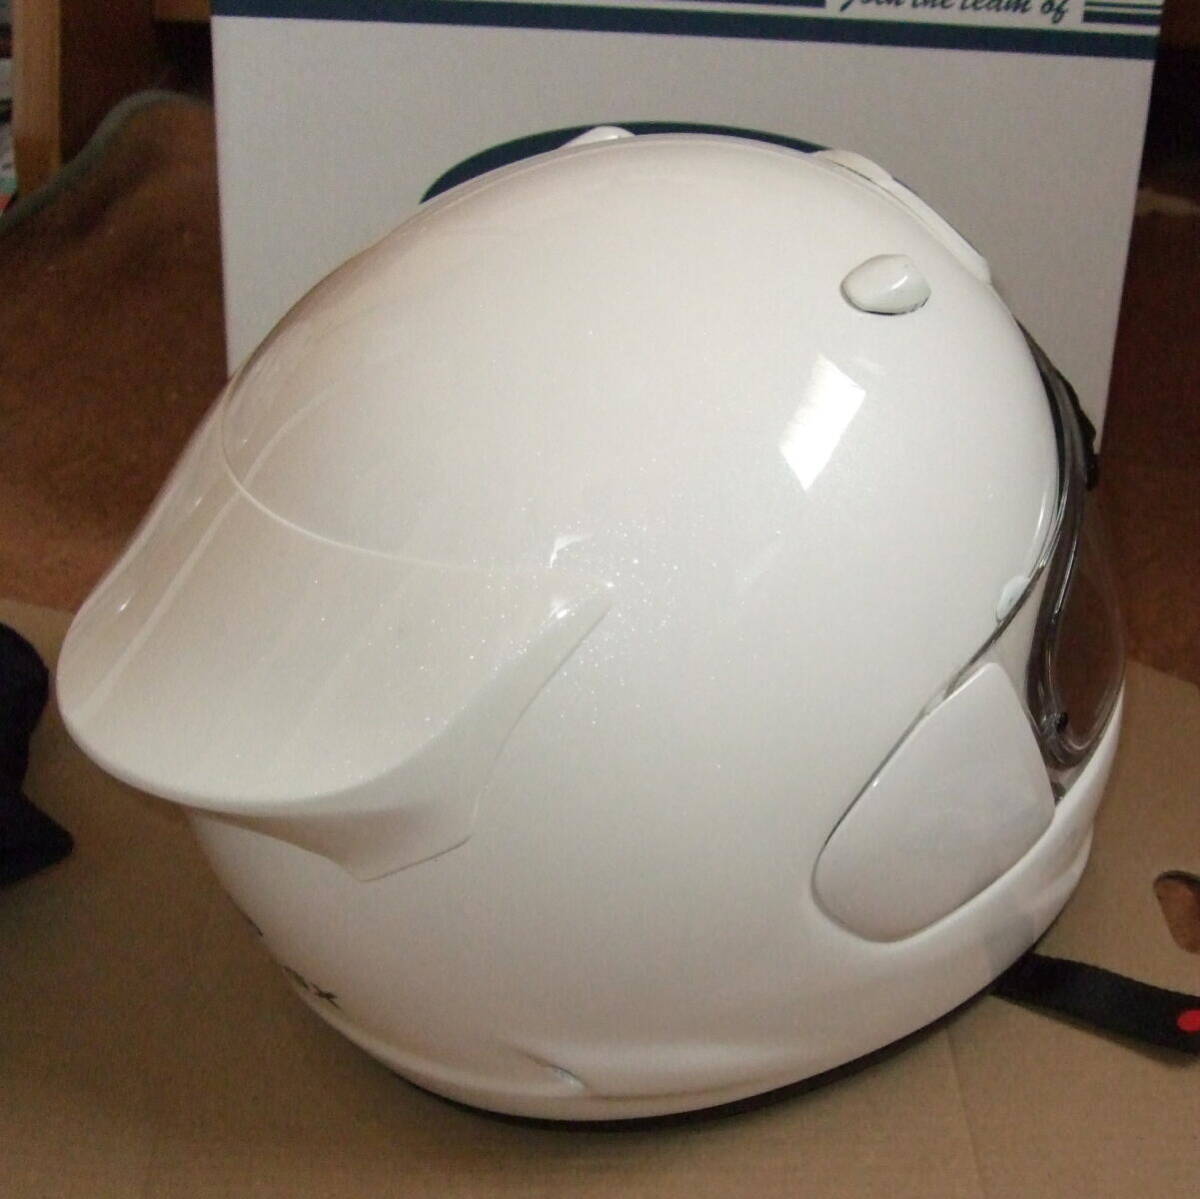  ARAI Astro GX L(59-60) стакан белый * контактный замок сиденье заслонка с чехлом * full-face шлем * arai ASTRO-GX белый 